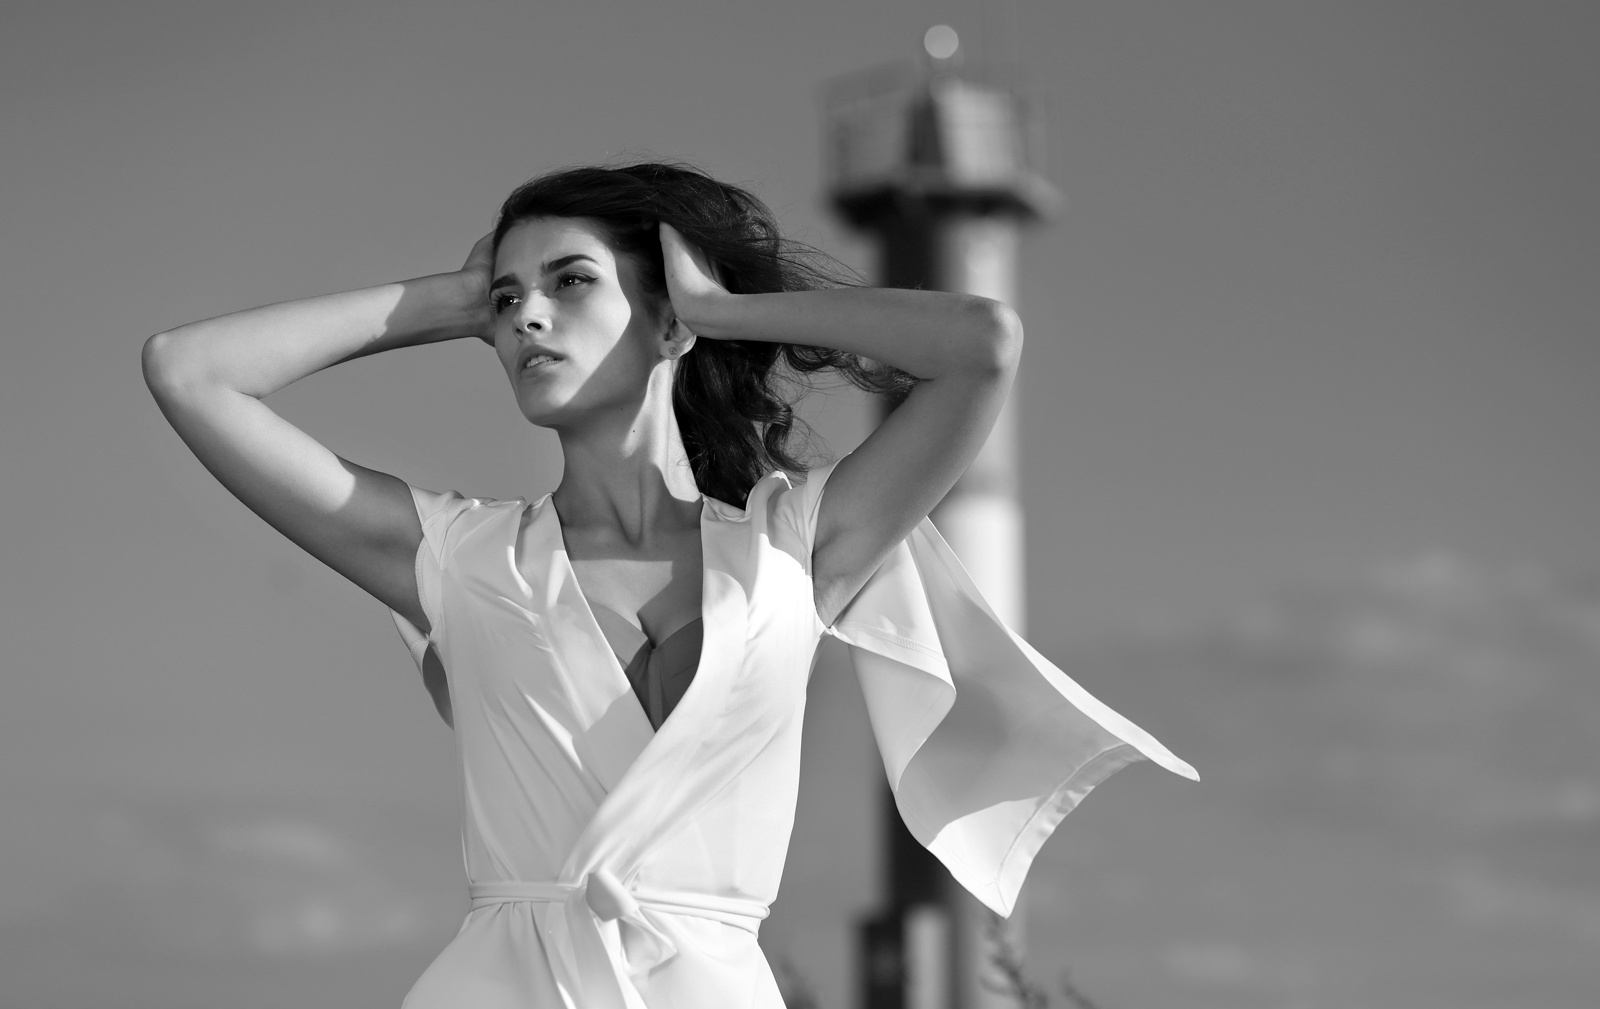 Ветер у маяка... Девушка женщина модель молодость взгляд портрет бьюти фото красивая актриса маяк ветер Кронштадт форт Константин